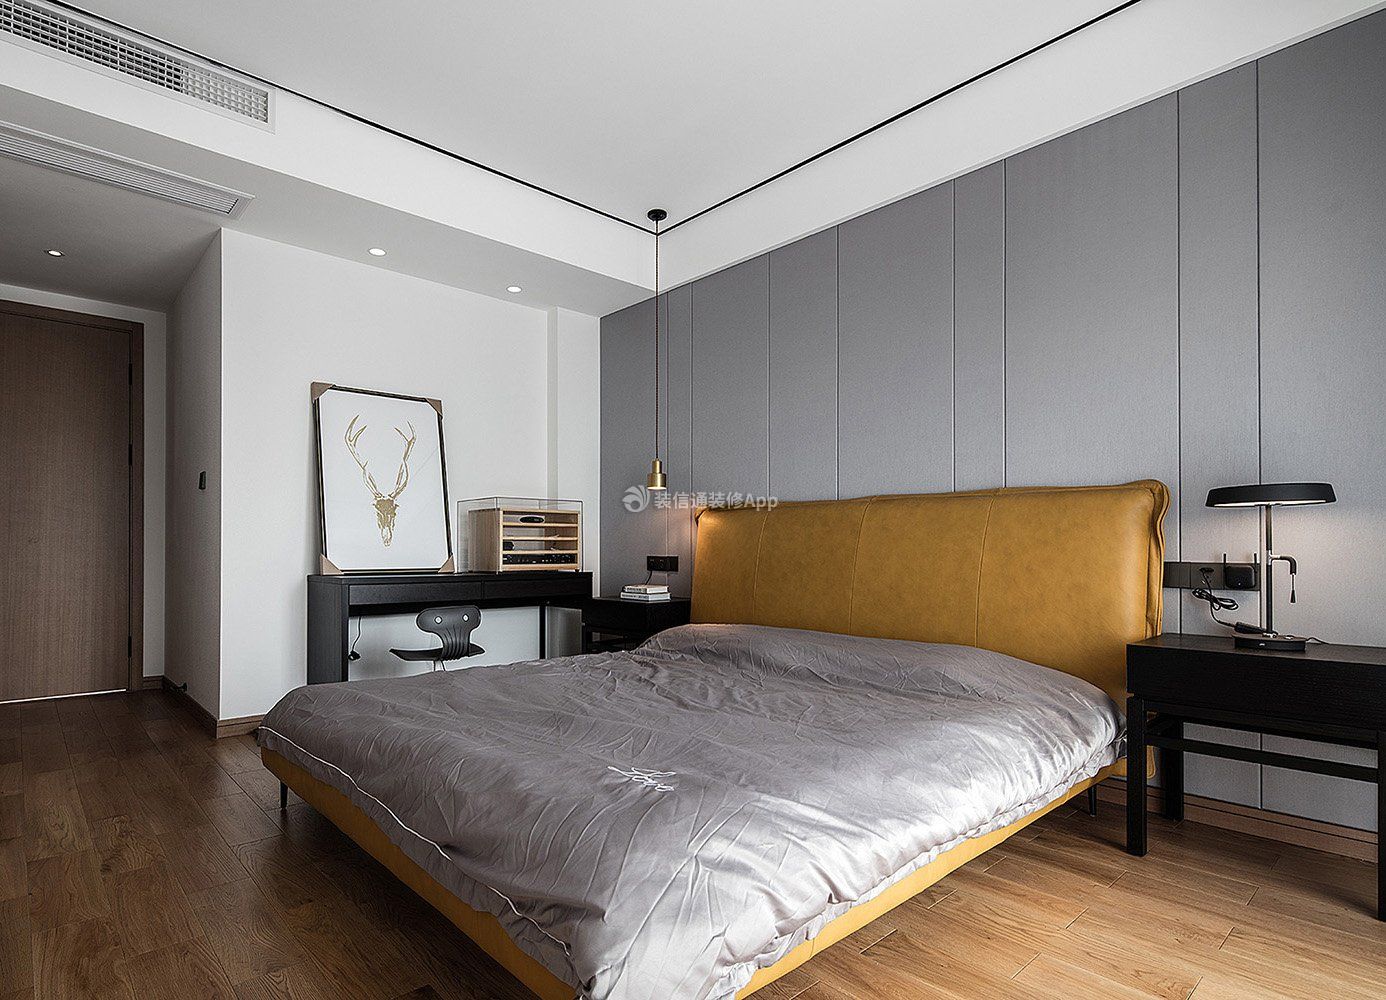 140平方现代卧室床头背景墙装修效果图